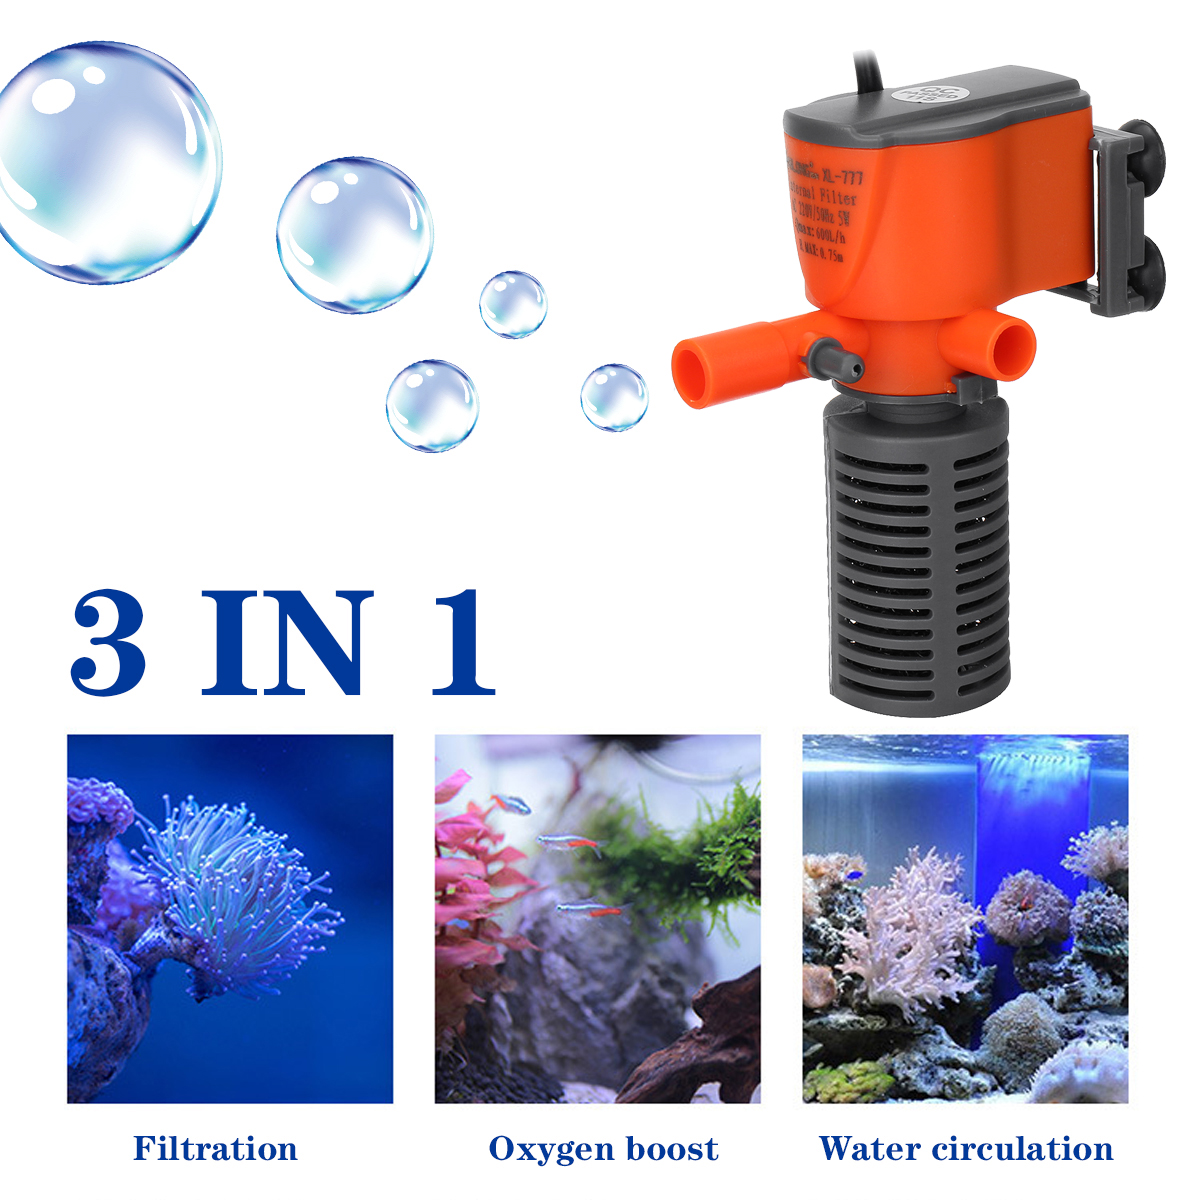 3-IN-1-35W-Aquarium-Water-Pump-Submersible-Fish-Tank-Tropical-Marine-Filter-1783986-1